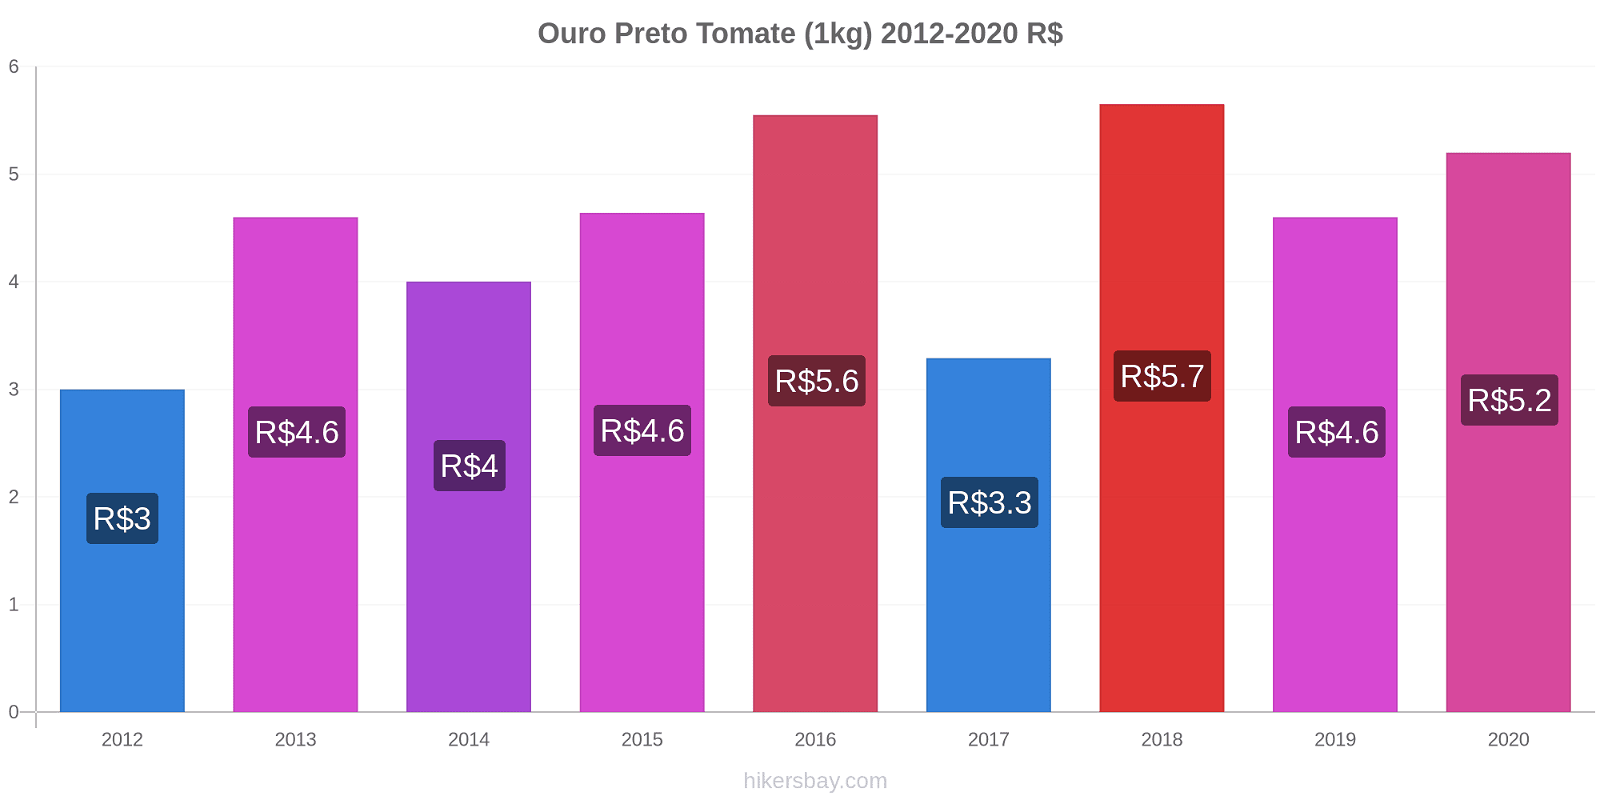 Ouro Preto cambios de precios Tomate (1kg) hikersbay.com